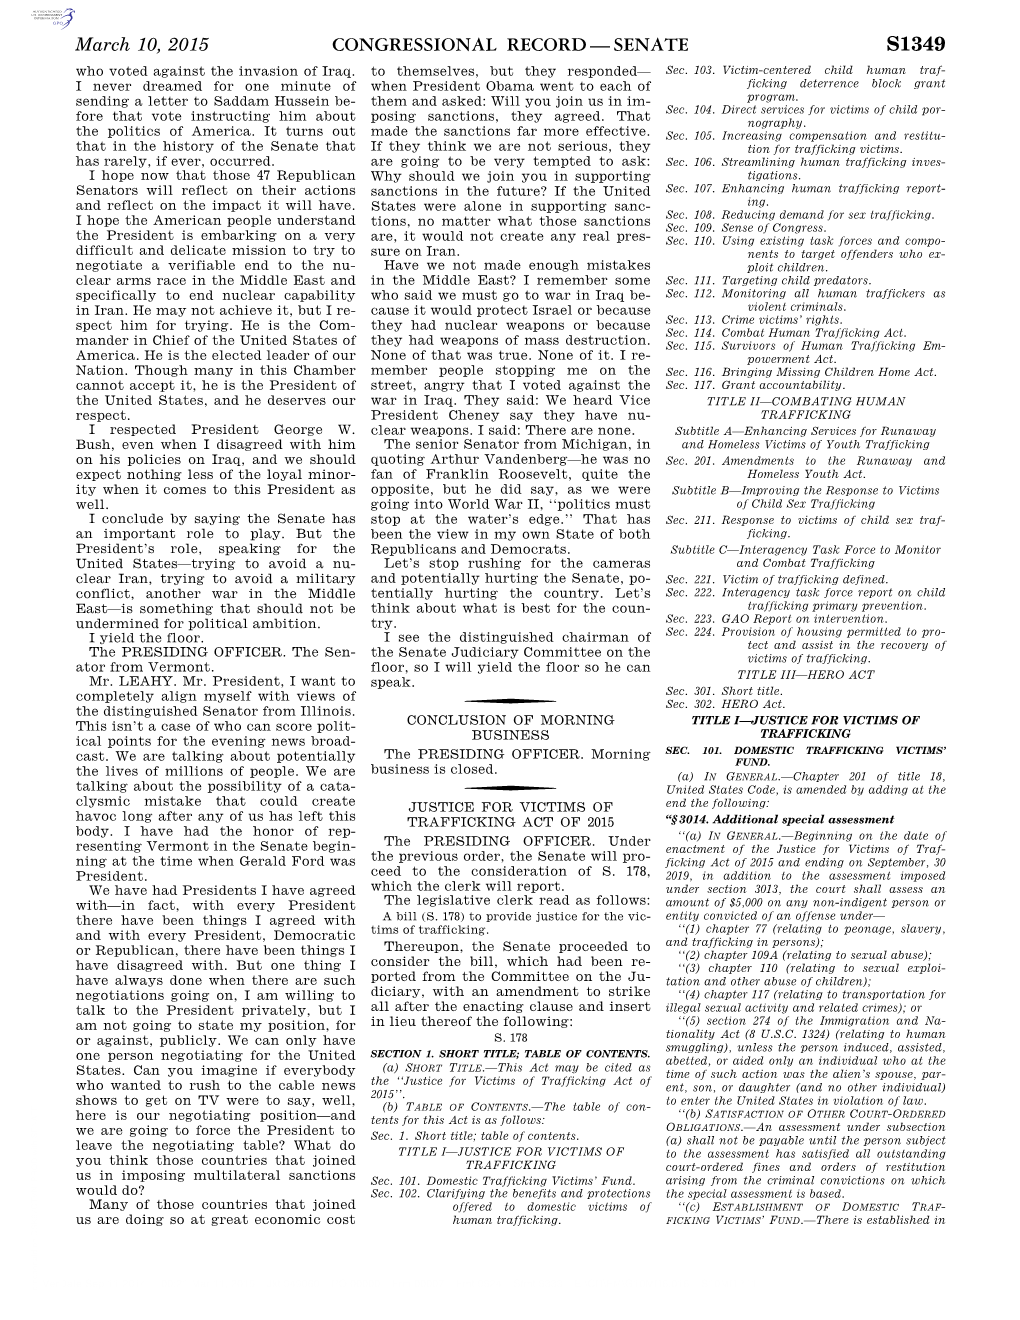 Congressional Record—Senate S1349